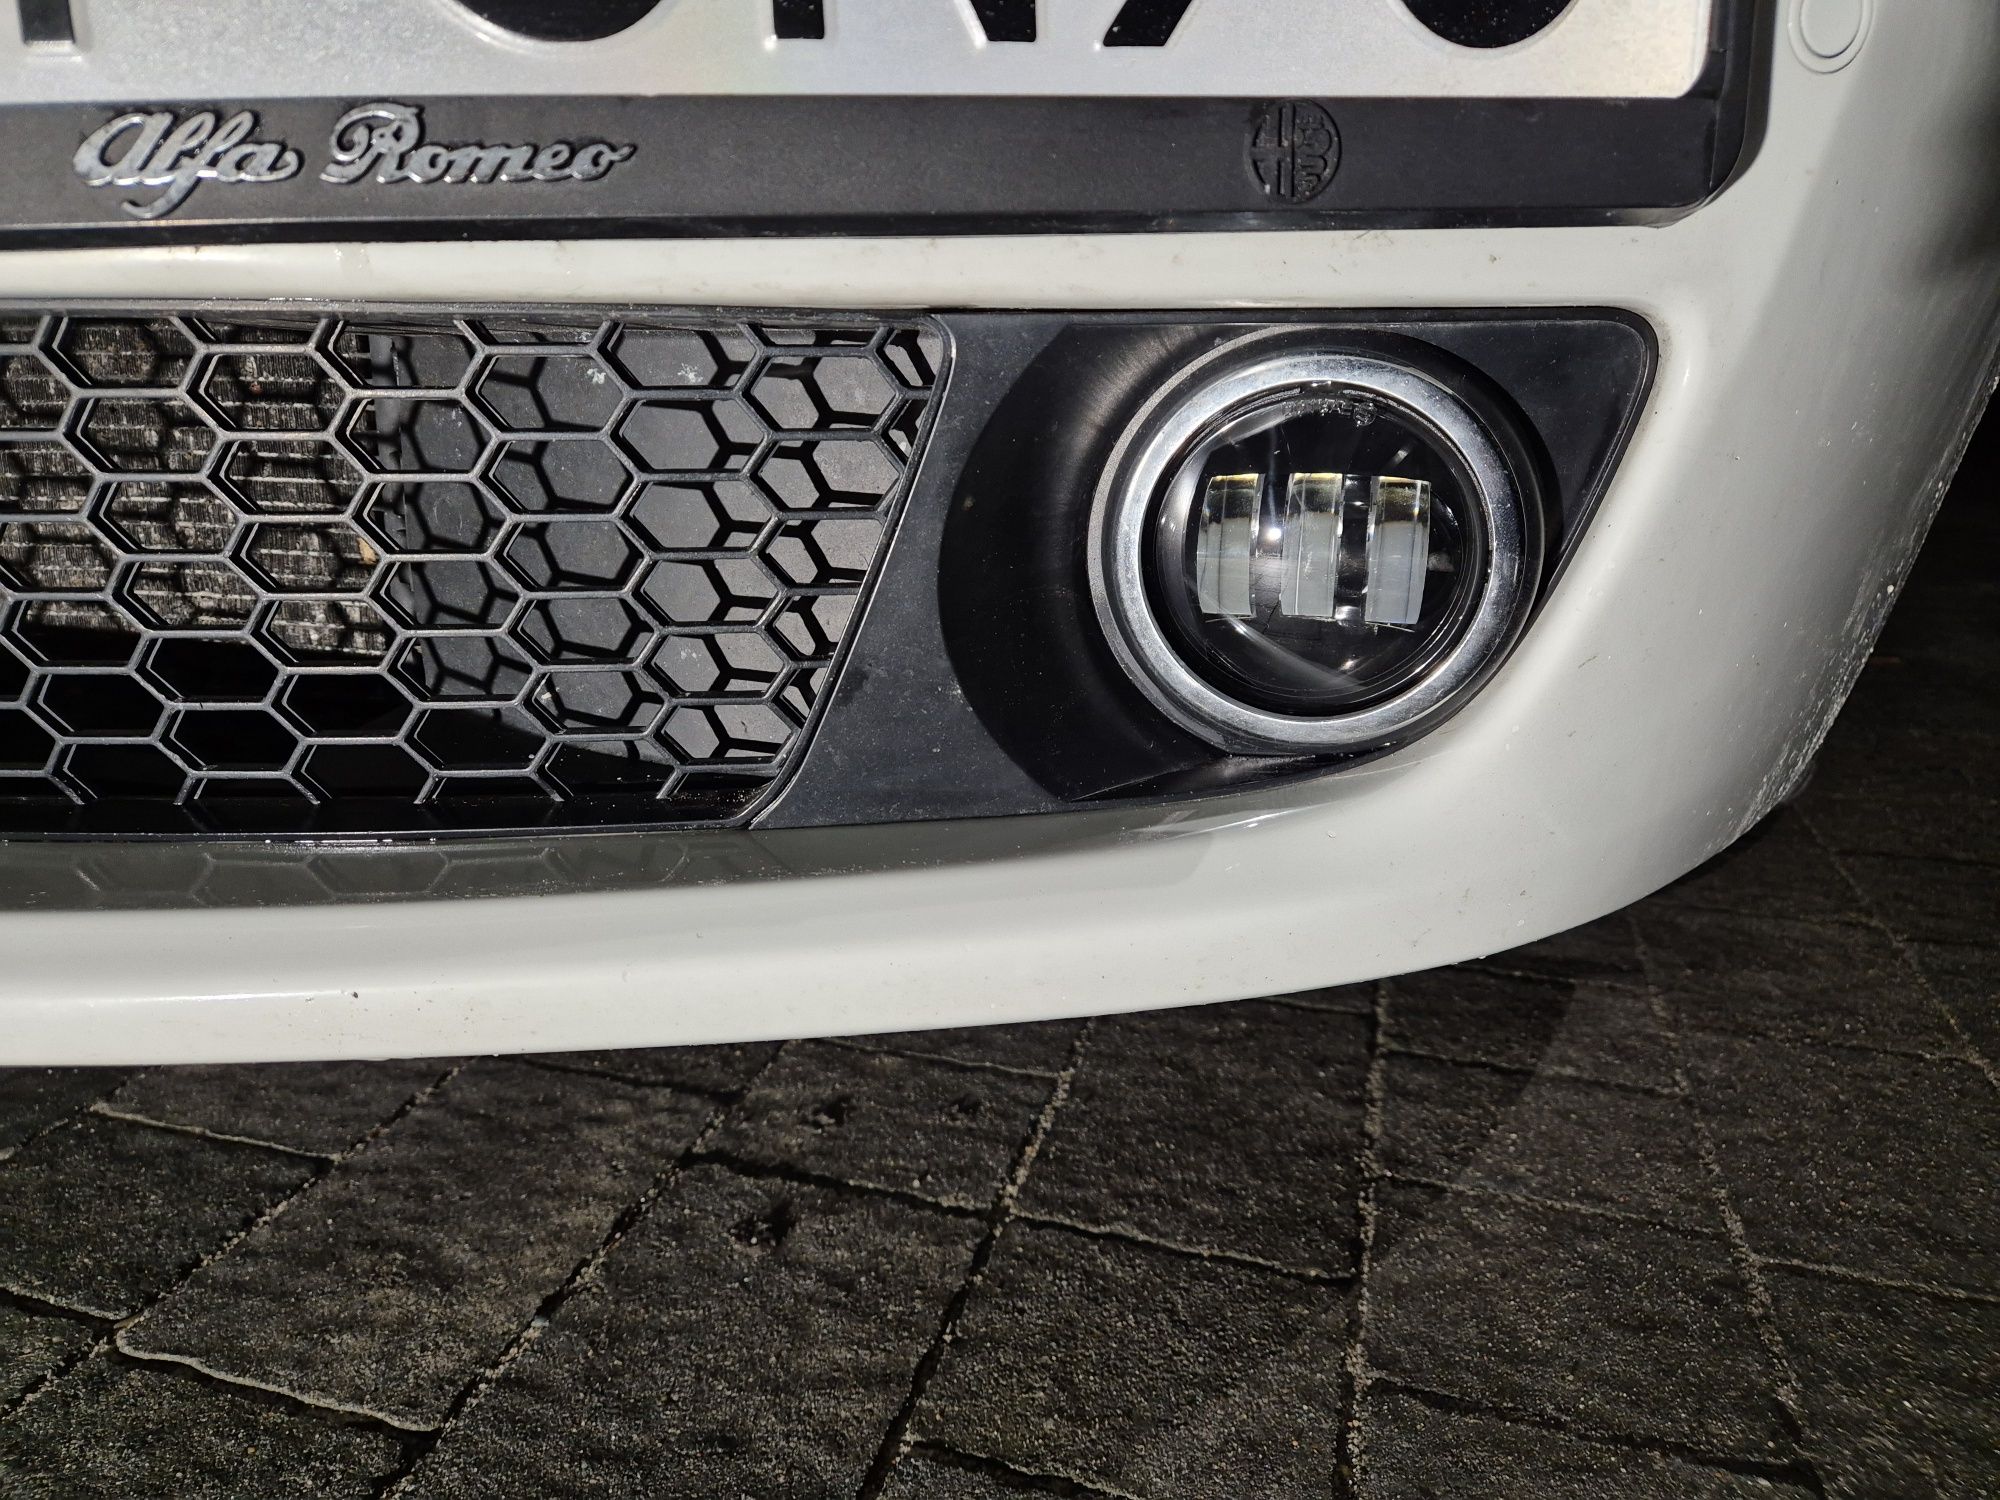 Halogeny LED Alfa Romeo 159 Brera Spider światła przeciwmgielne